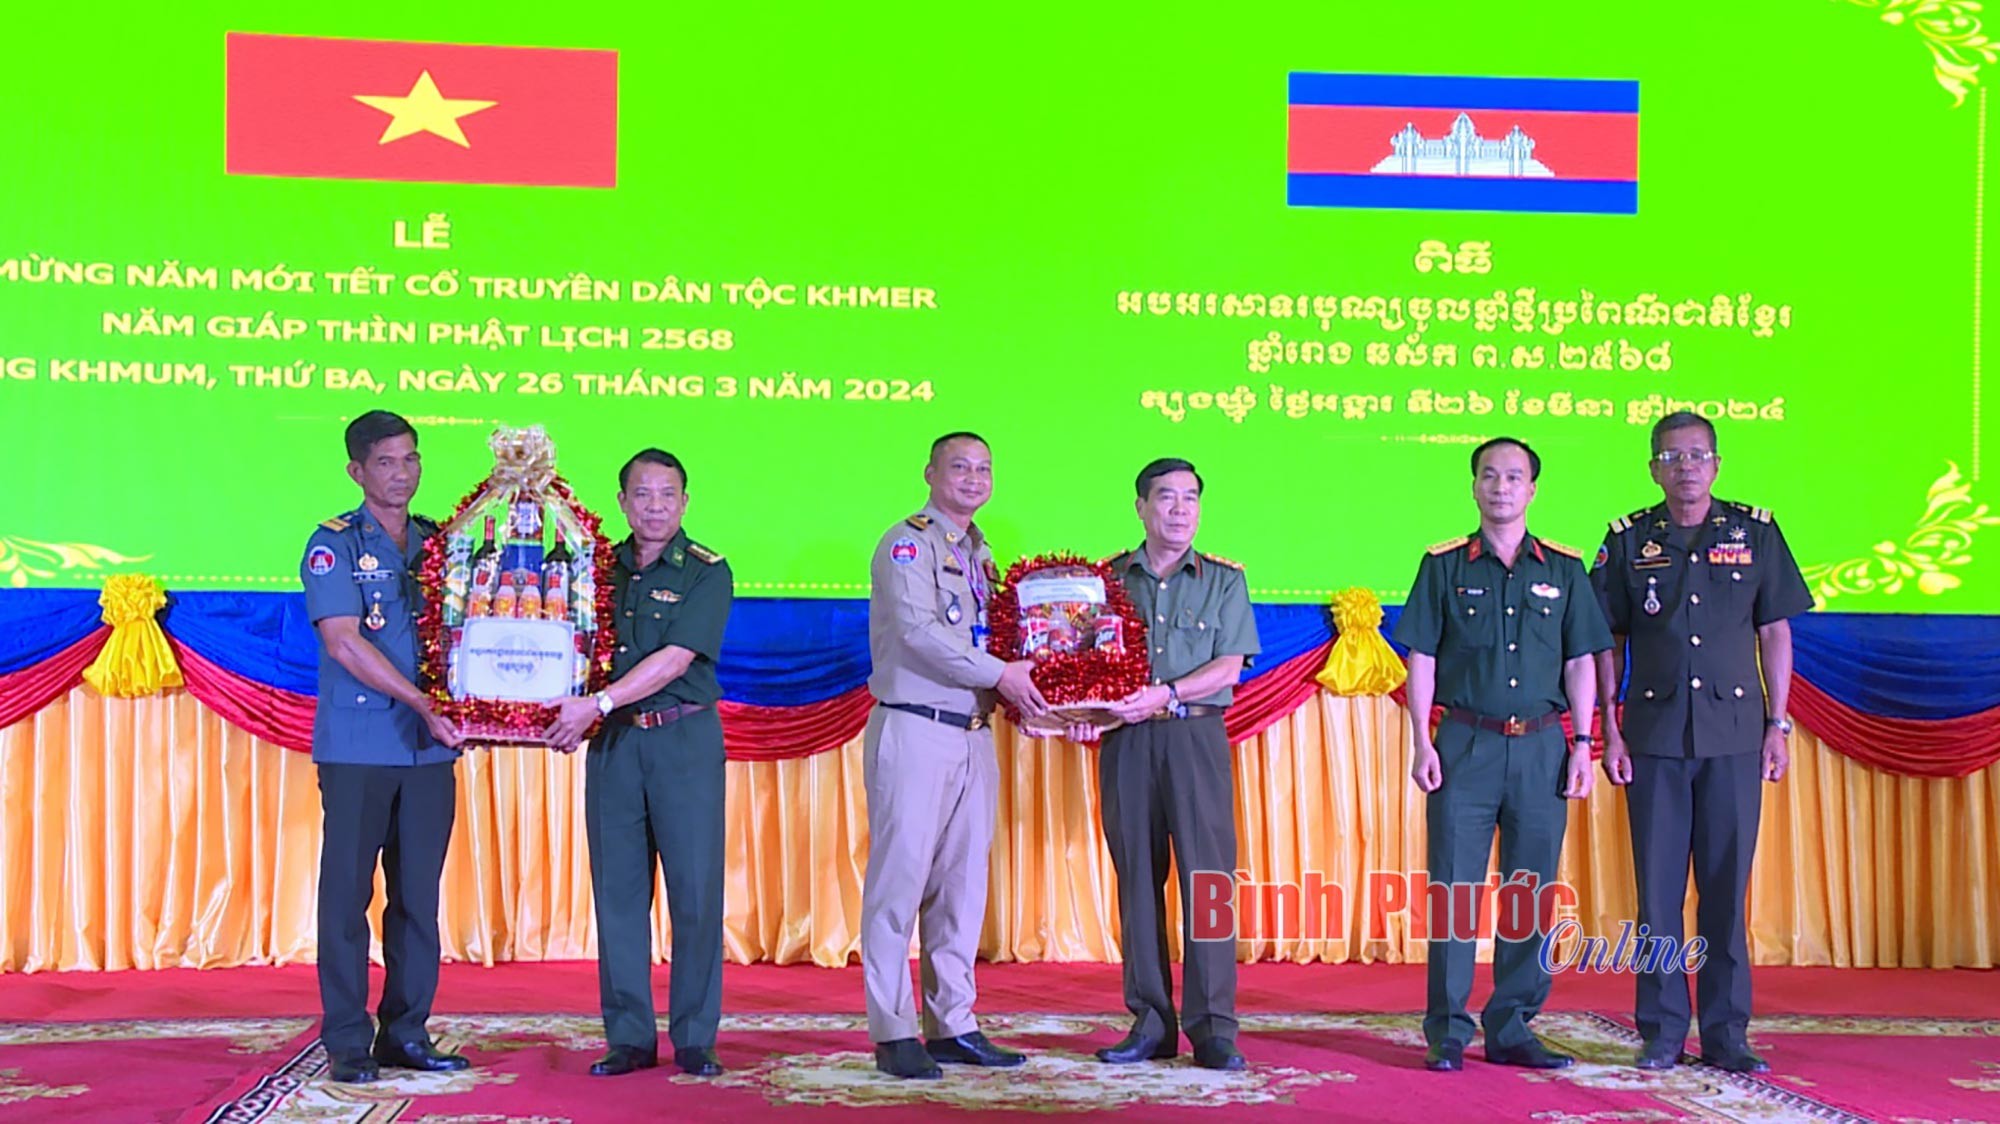 Lãnh đạo các lực lượng vũ trang tỉnh Bình Phước tặng quà lãnh đạo các lực lượng vũ trang tỉnh Tbong Khmum, Campuchia. (Ảnh: Báo Bình Phước)